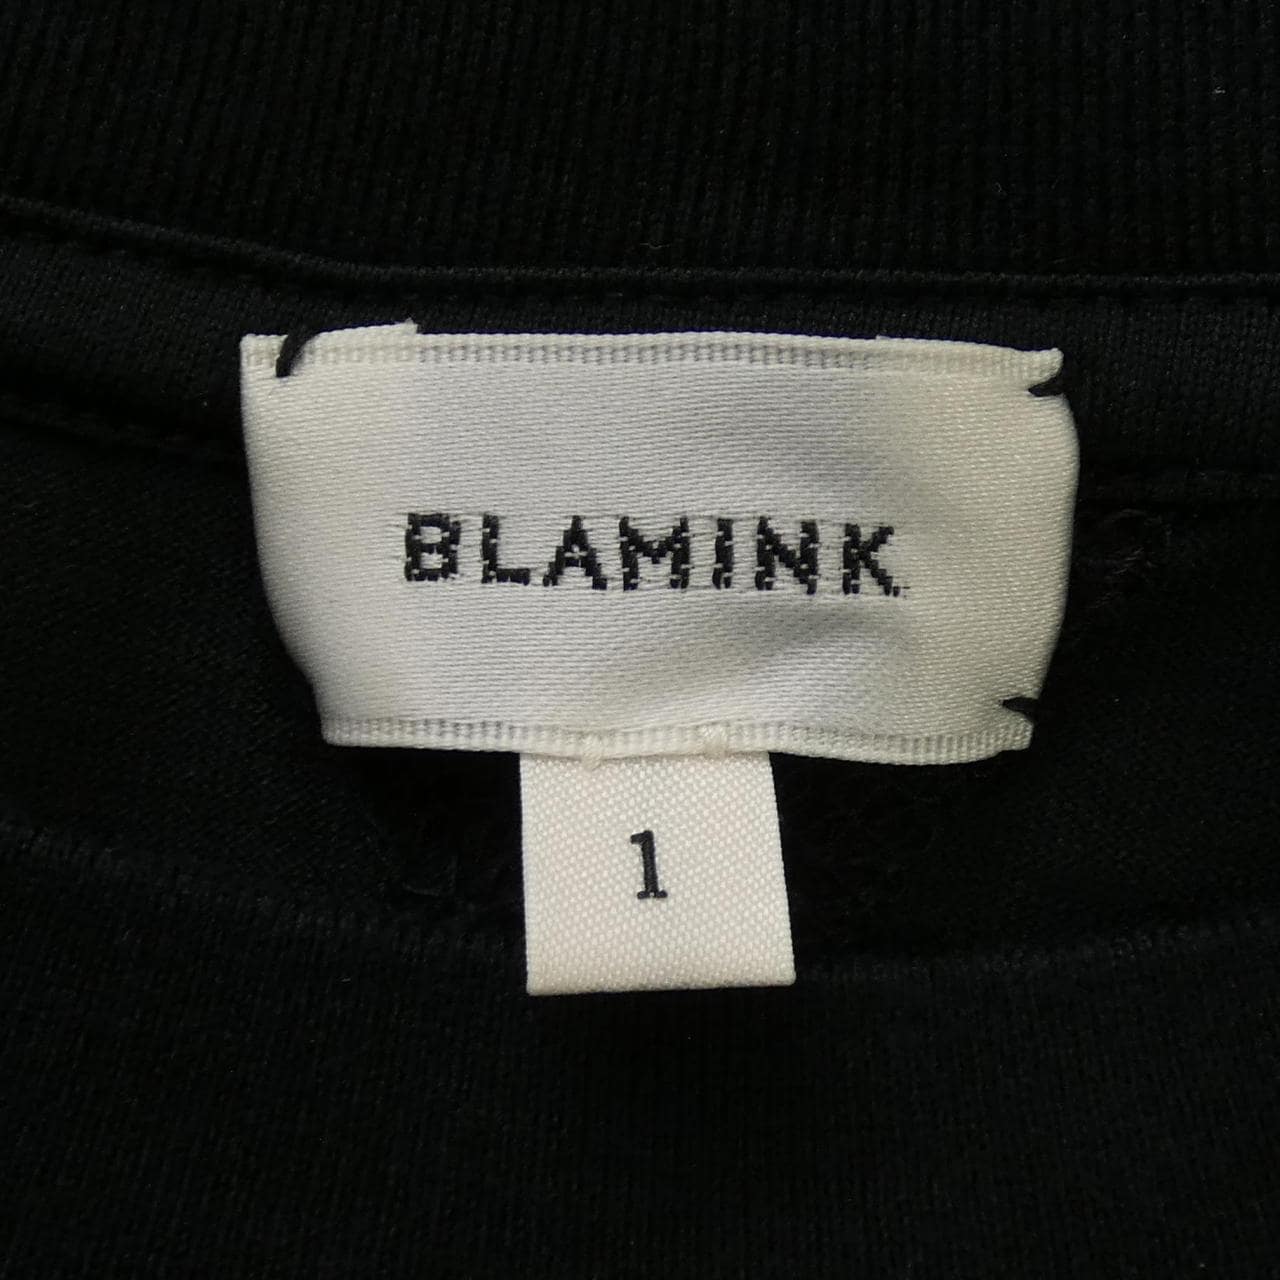 BLAMINK tops